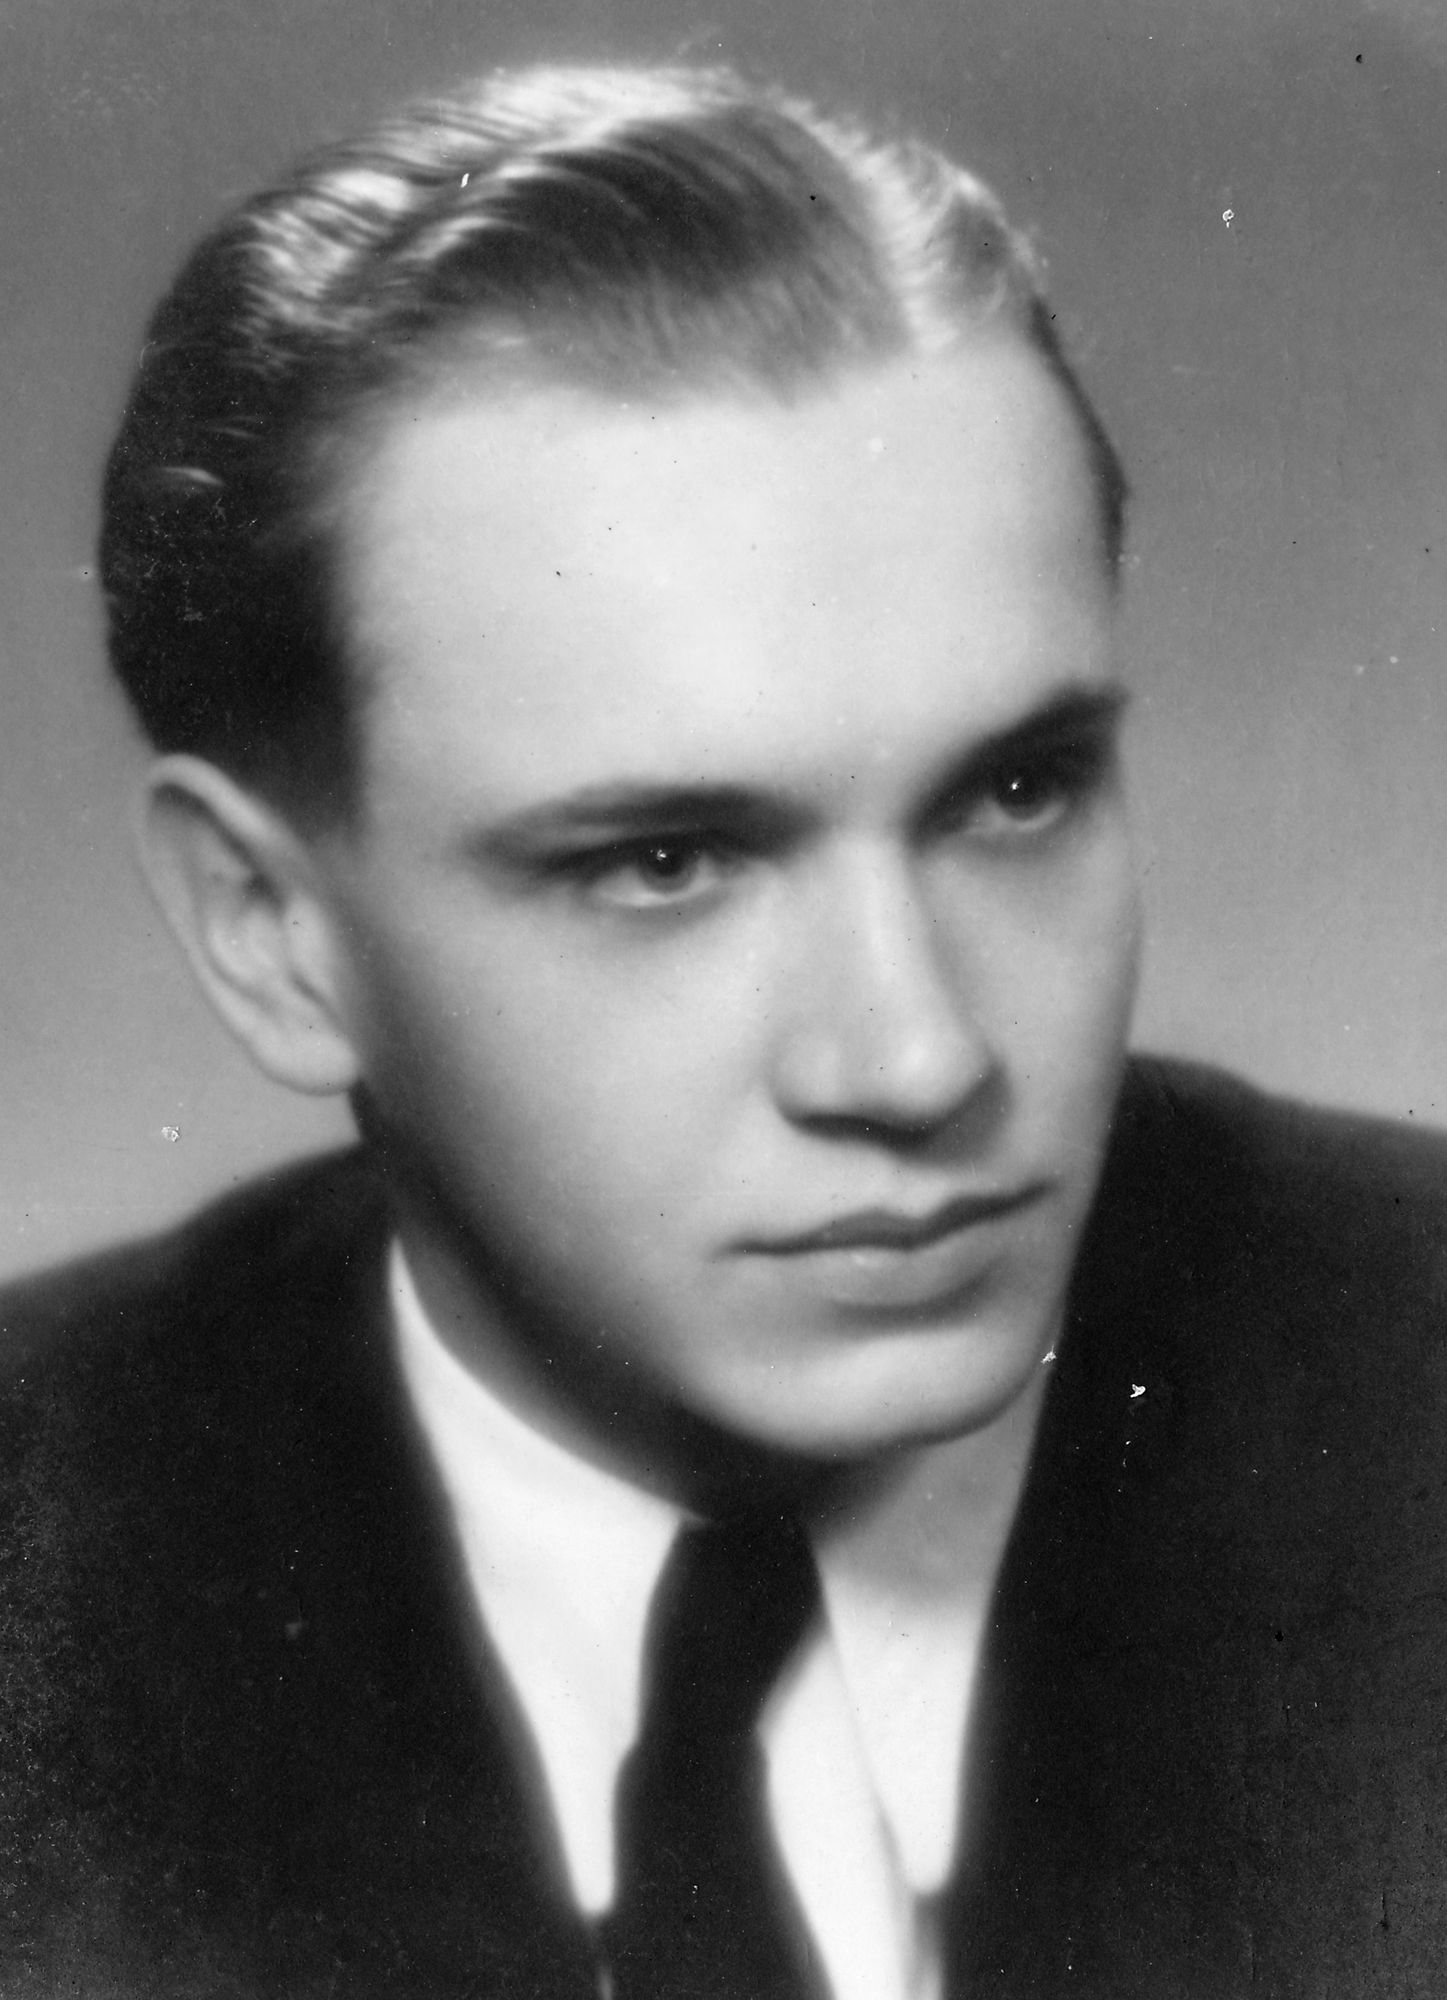 1946 maturitní foto.jpg (historic)